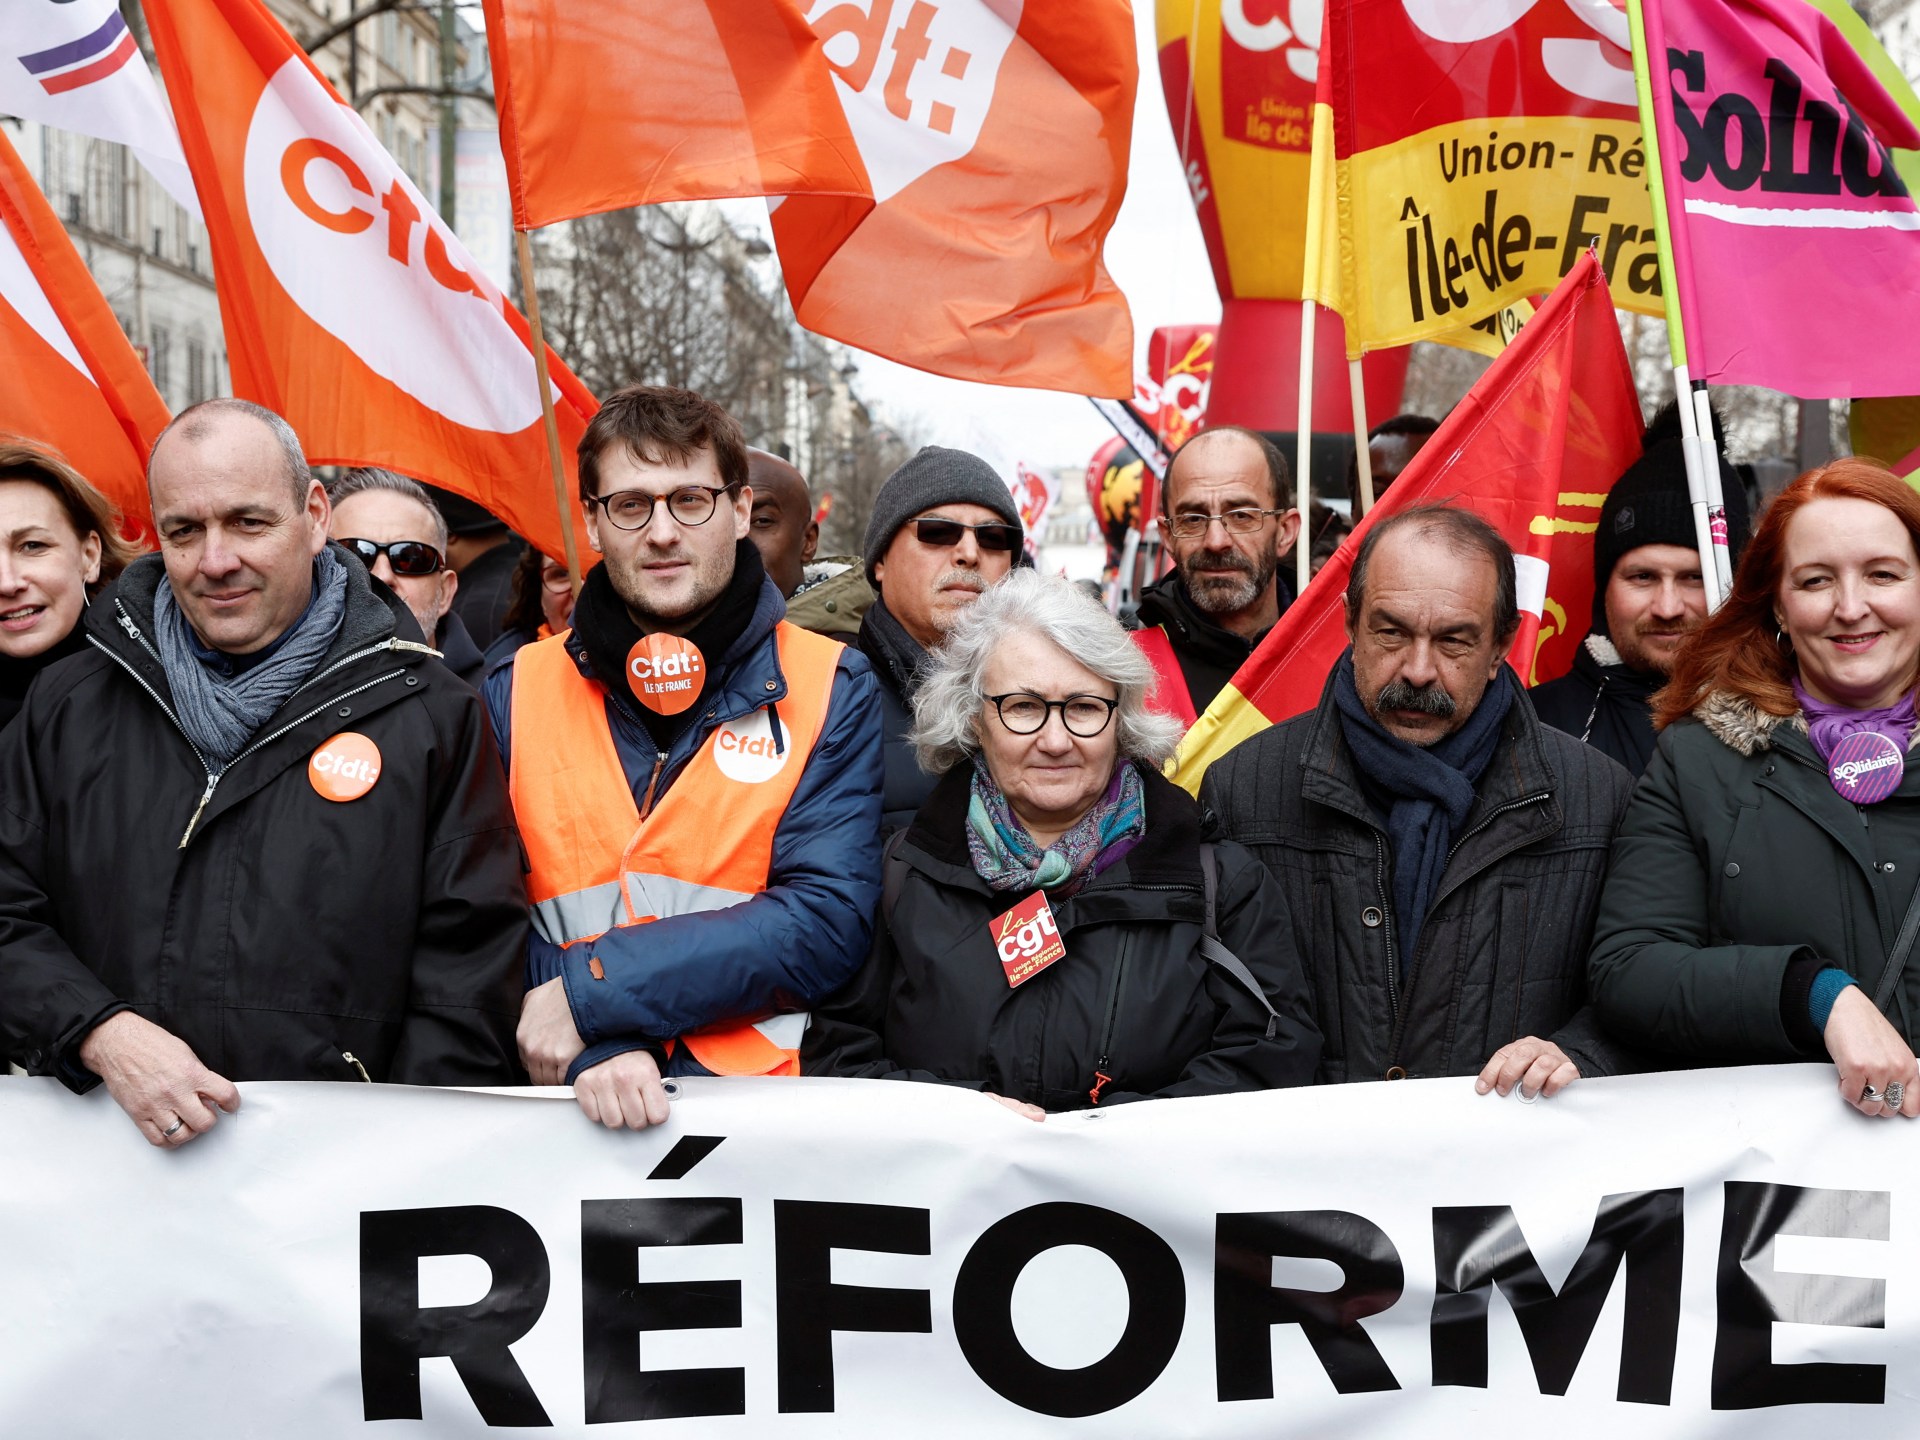 Protes Hari Buruh, pemogokan mengambil alih Prancis, Italia, Belanda |  Berita Hak Buruh